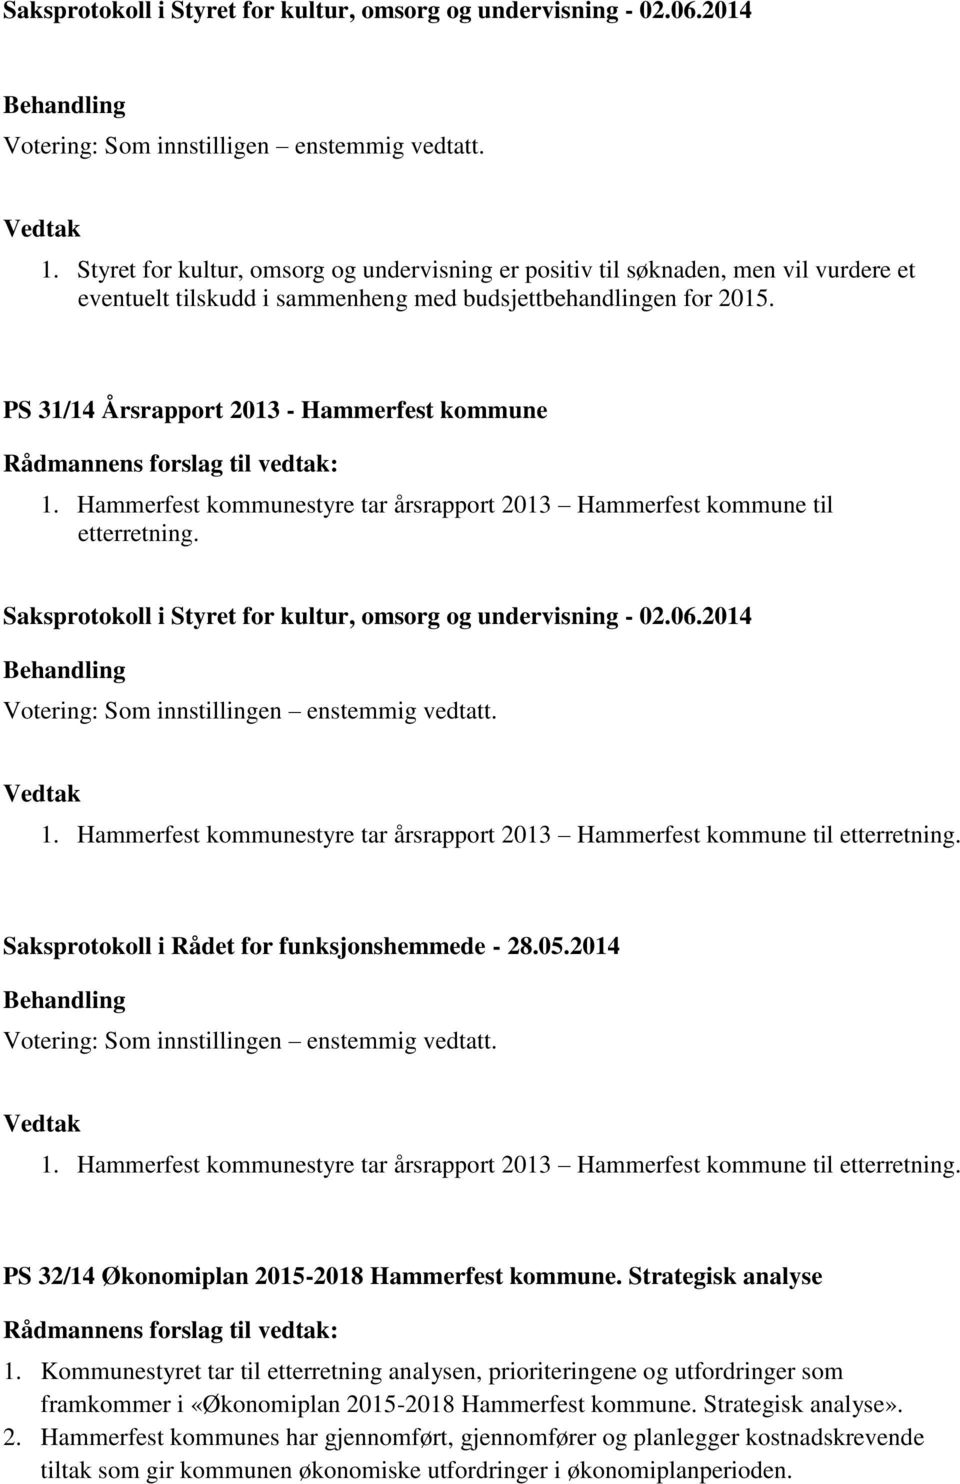 PS 31/14 Årsrapport 2013 - Hammerfest kommune 1. Hammerfest kommunestyre tar årsrapport 2013 Hammerfest kommune til etterretning. 1. Hammerfest kommunestyre tar årsrapport 2013 Hammerfest kommune til etterretning. Saksprotokoll i Rådet for funksjonshemmede - 28.